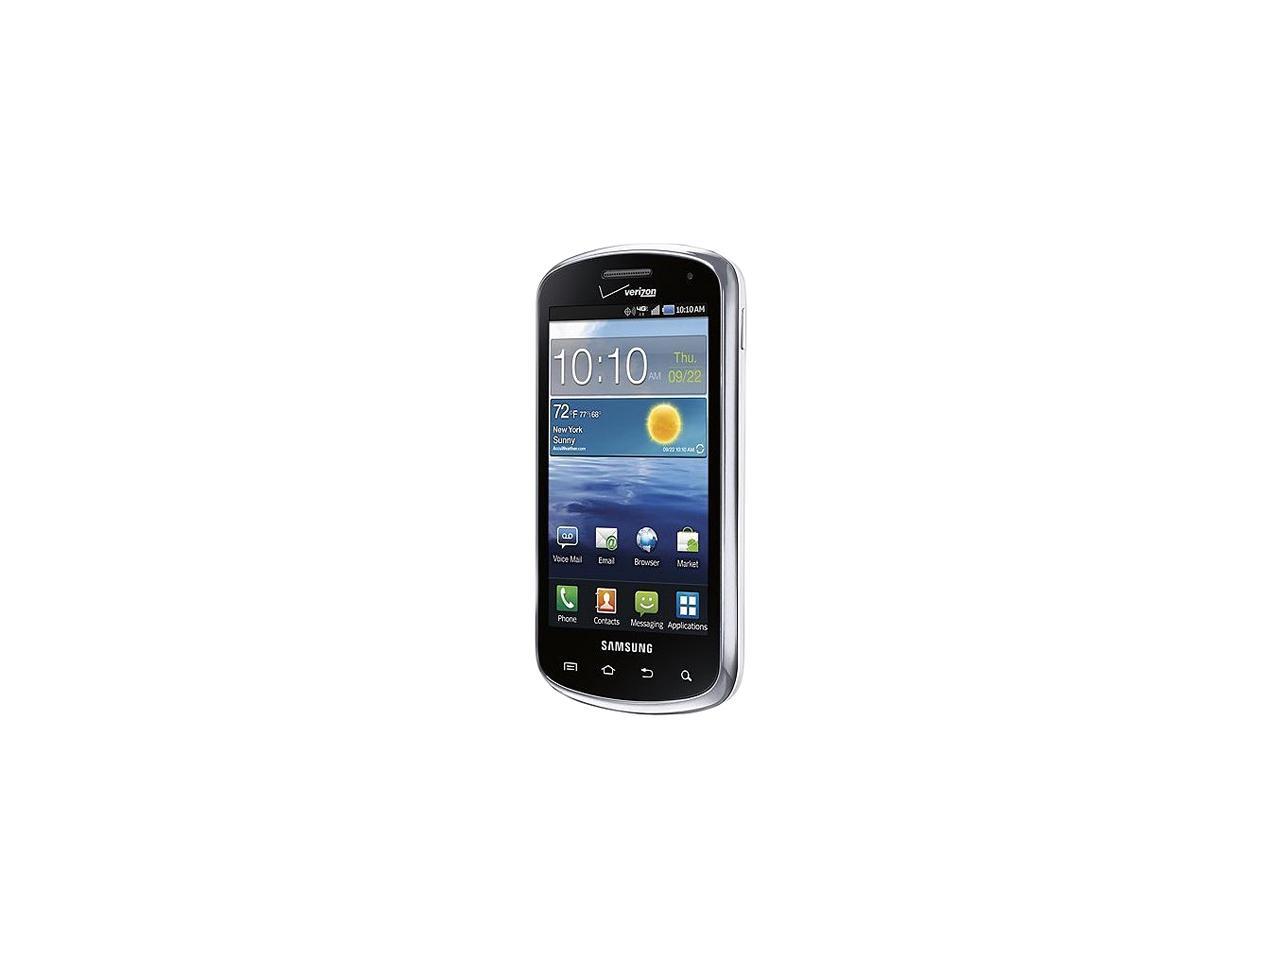 Samsung Stratosphere I405 White Lte 4g Lte Verizon Cdma Android Slider Phone